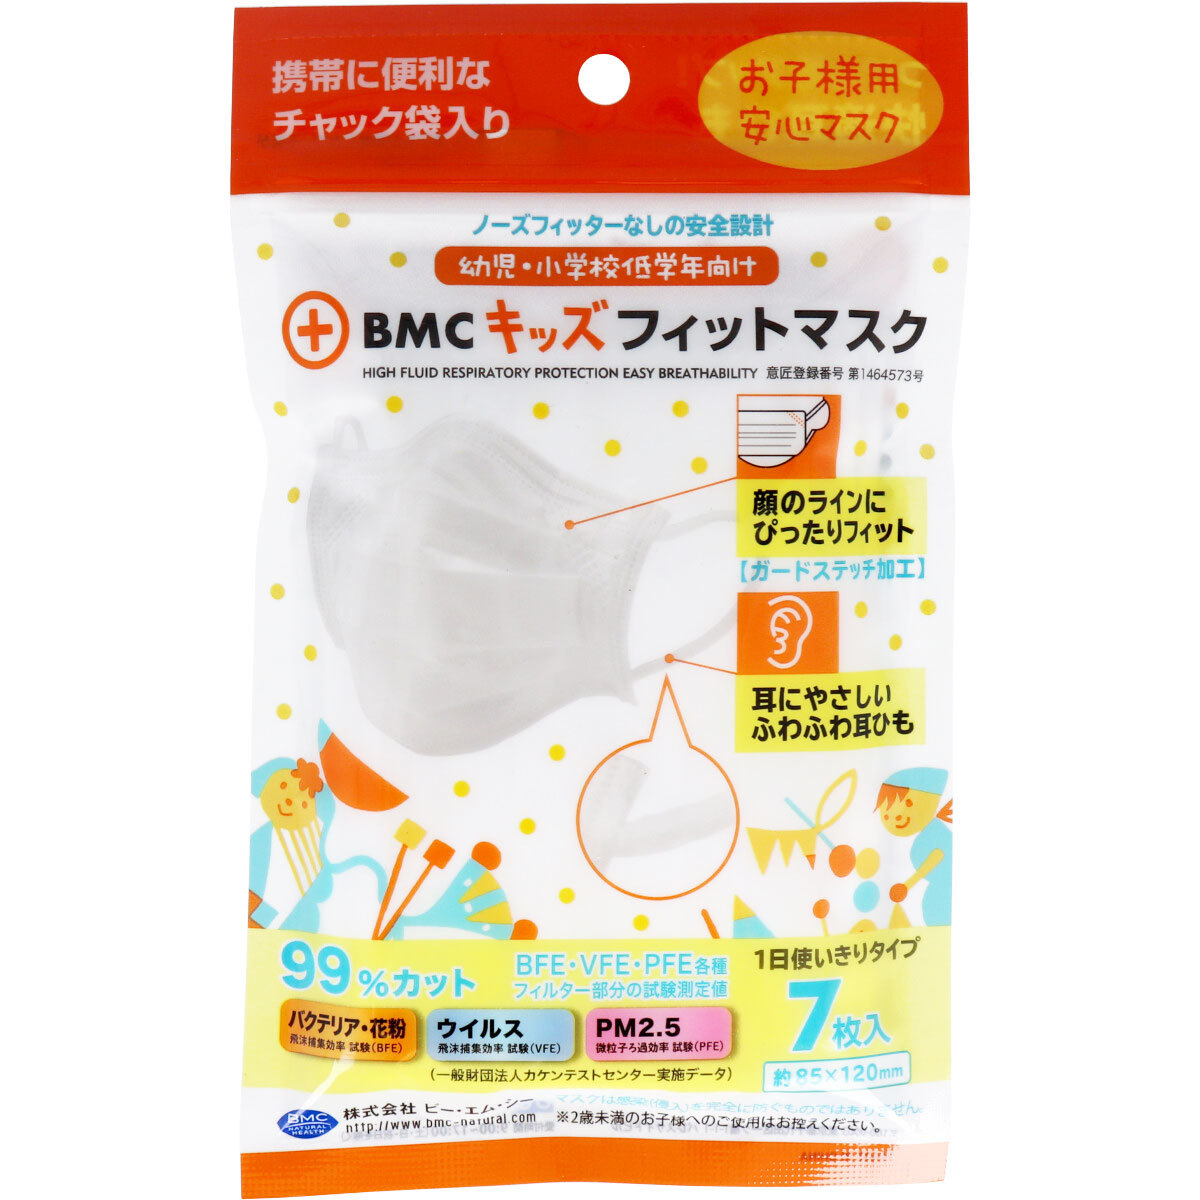  суммировать выгода BMC Kids Fit маска одноразовый хирургический маска ребенок * начальная школа младшие классы предназначенный 7 листов входит x [30 шт ] /k